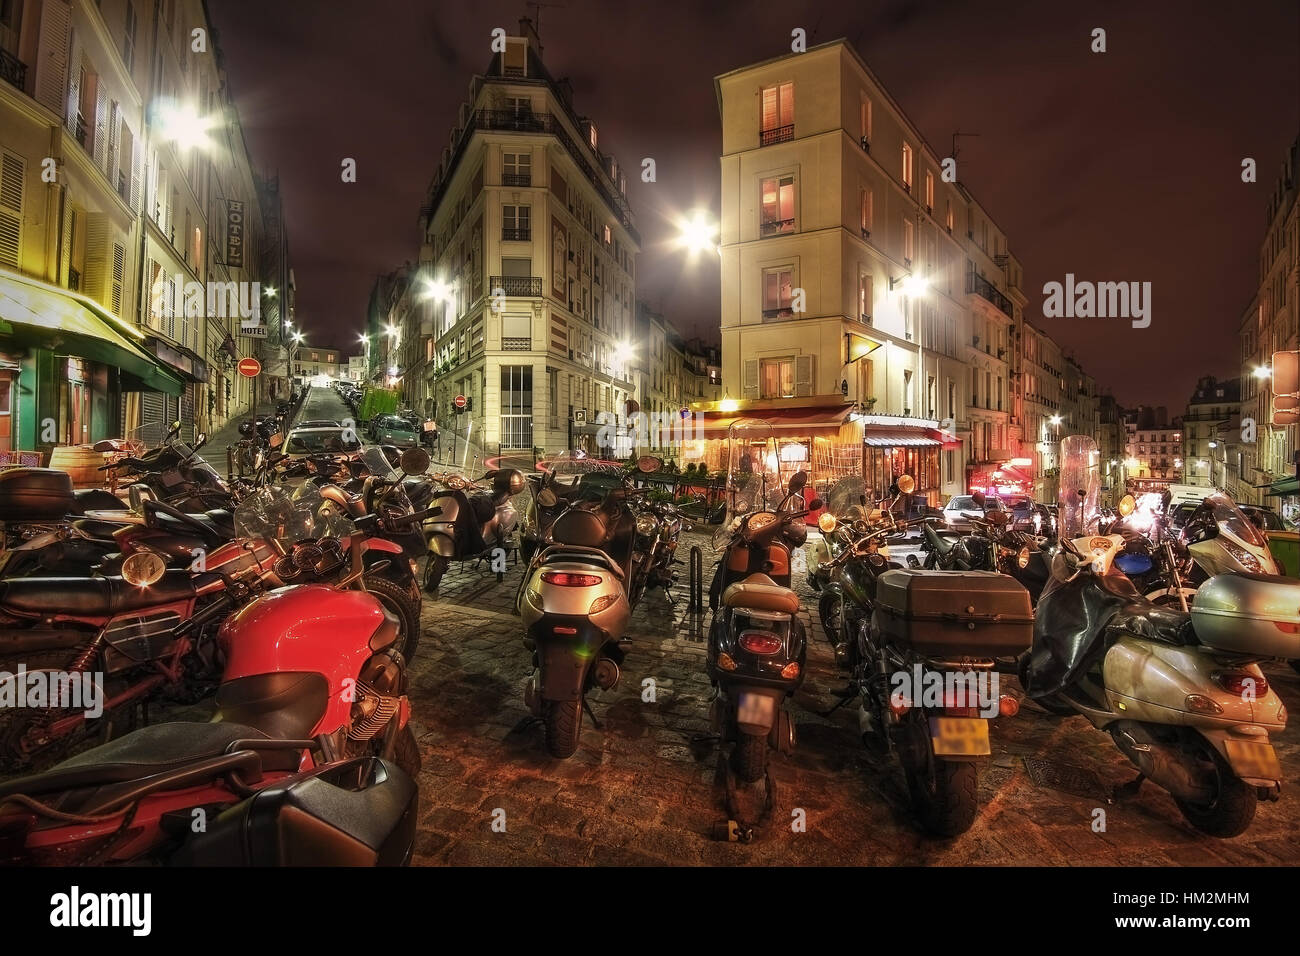 Paris. La France. Les motos garées sur le carrefour rue Maurice Utrillo, rue Paul Albert, rue Feutrier et rue Muller. Banque D'Images